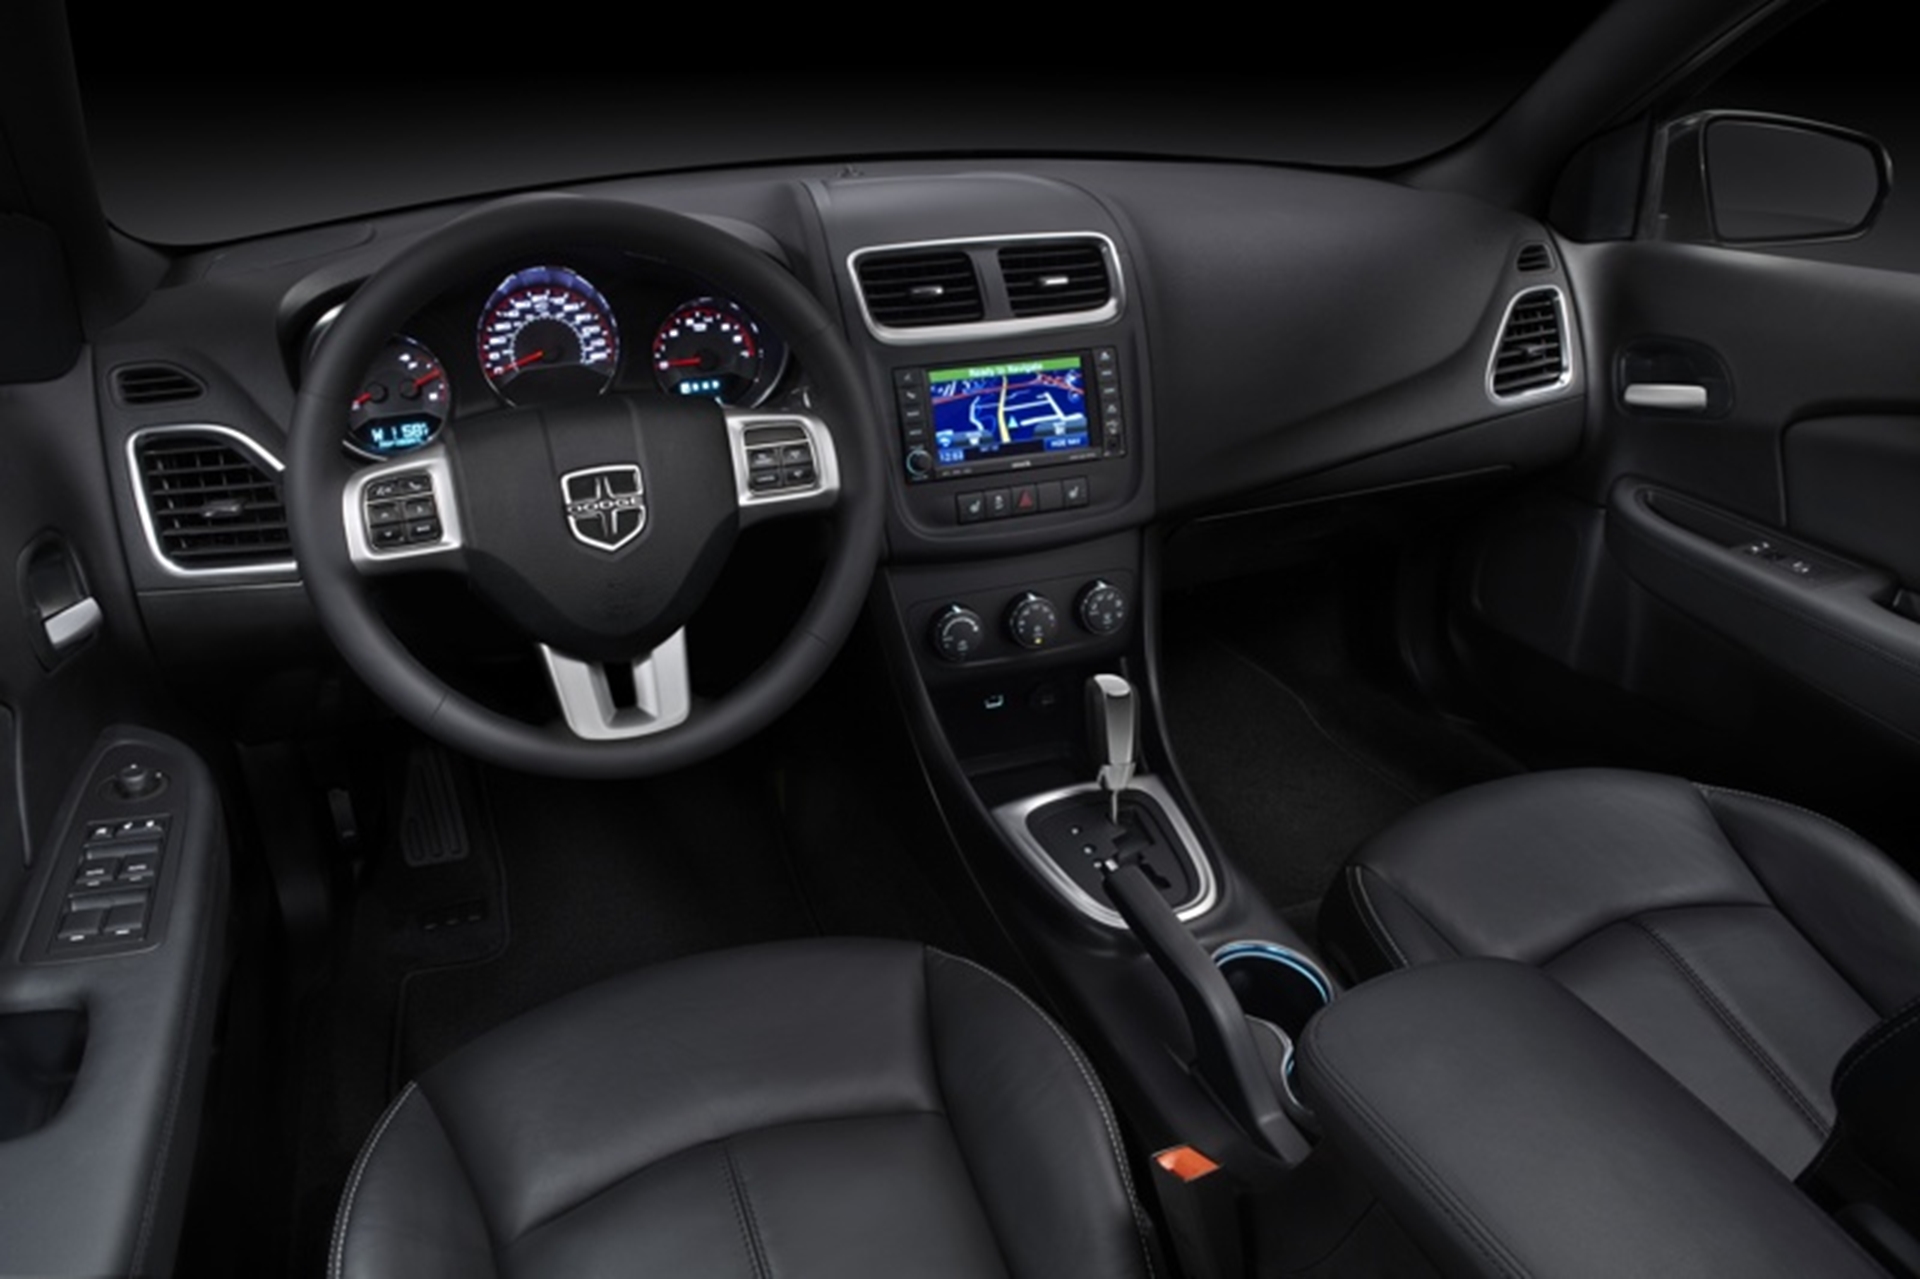 Dodge Introduces the 2012 Avenger SE V6